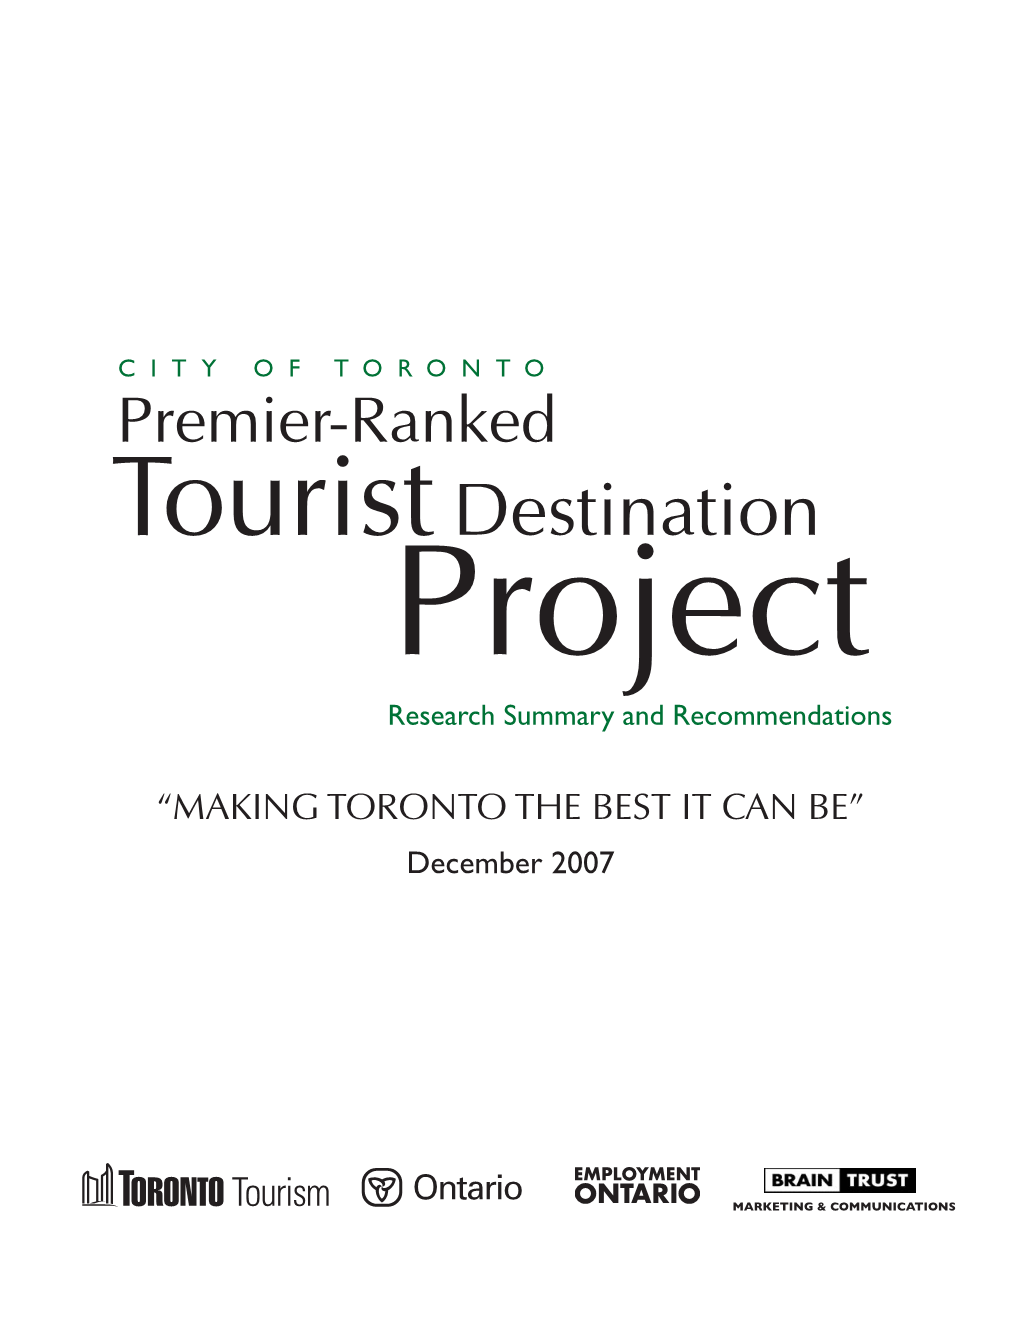 Premier-Ranked Tourist Destination Project